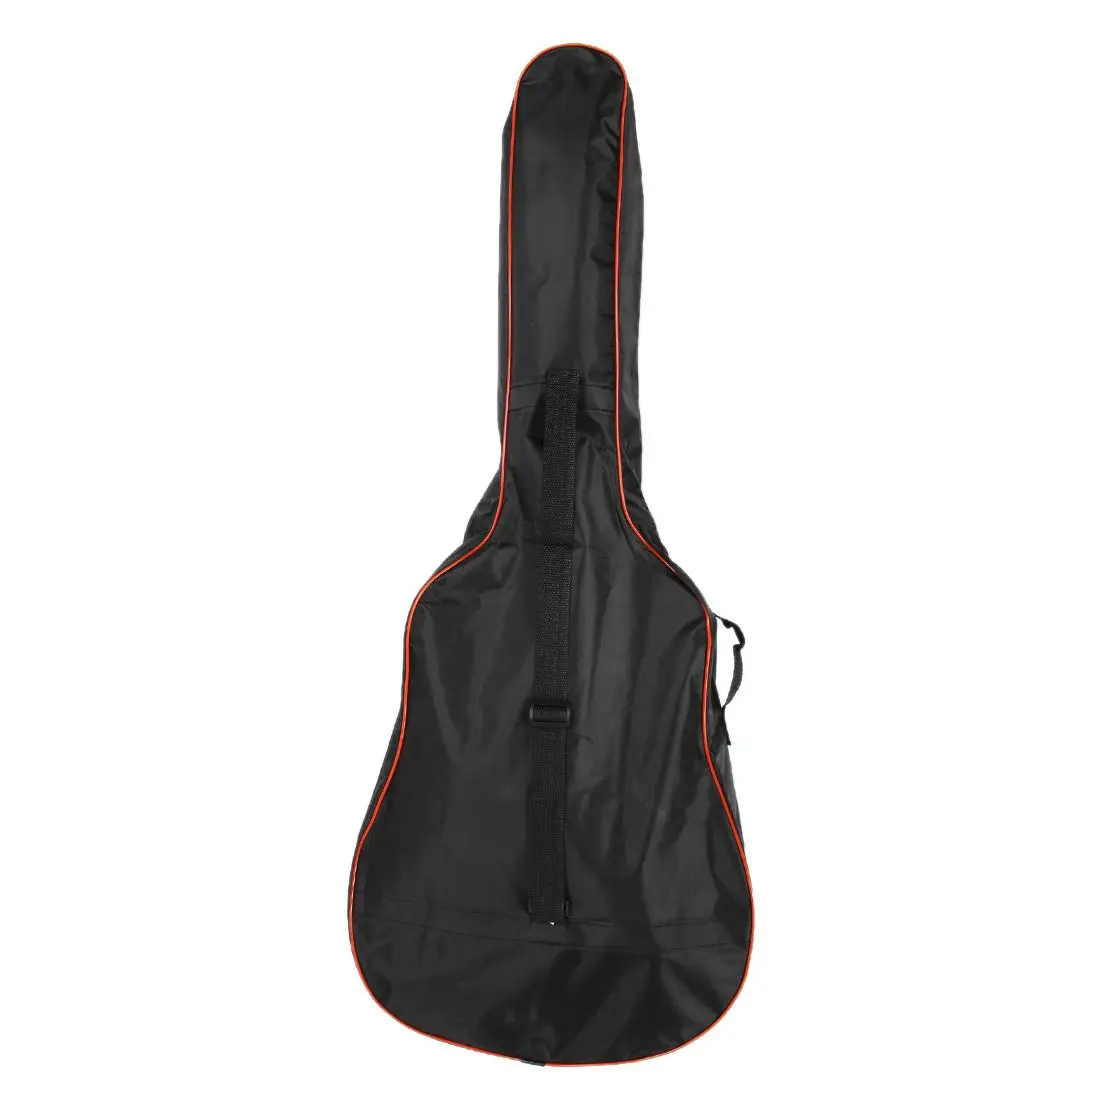 41 дюймов Классическая акустическая гитара задняя крышка чехол сумка 5 мм плечевые ремни